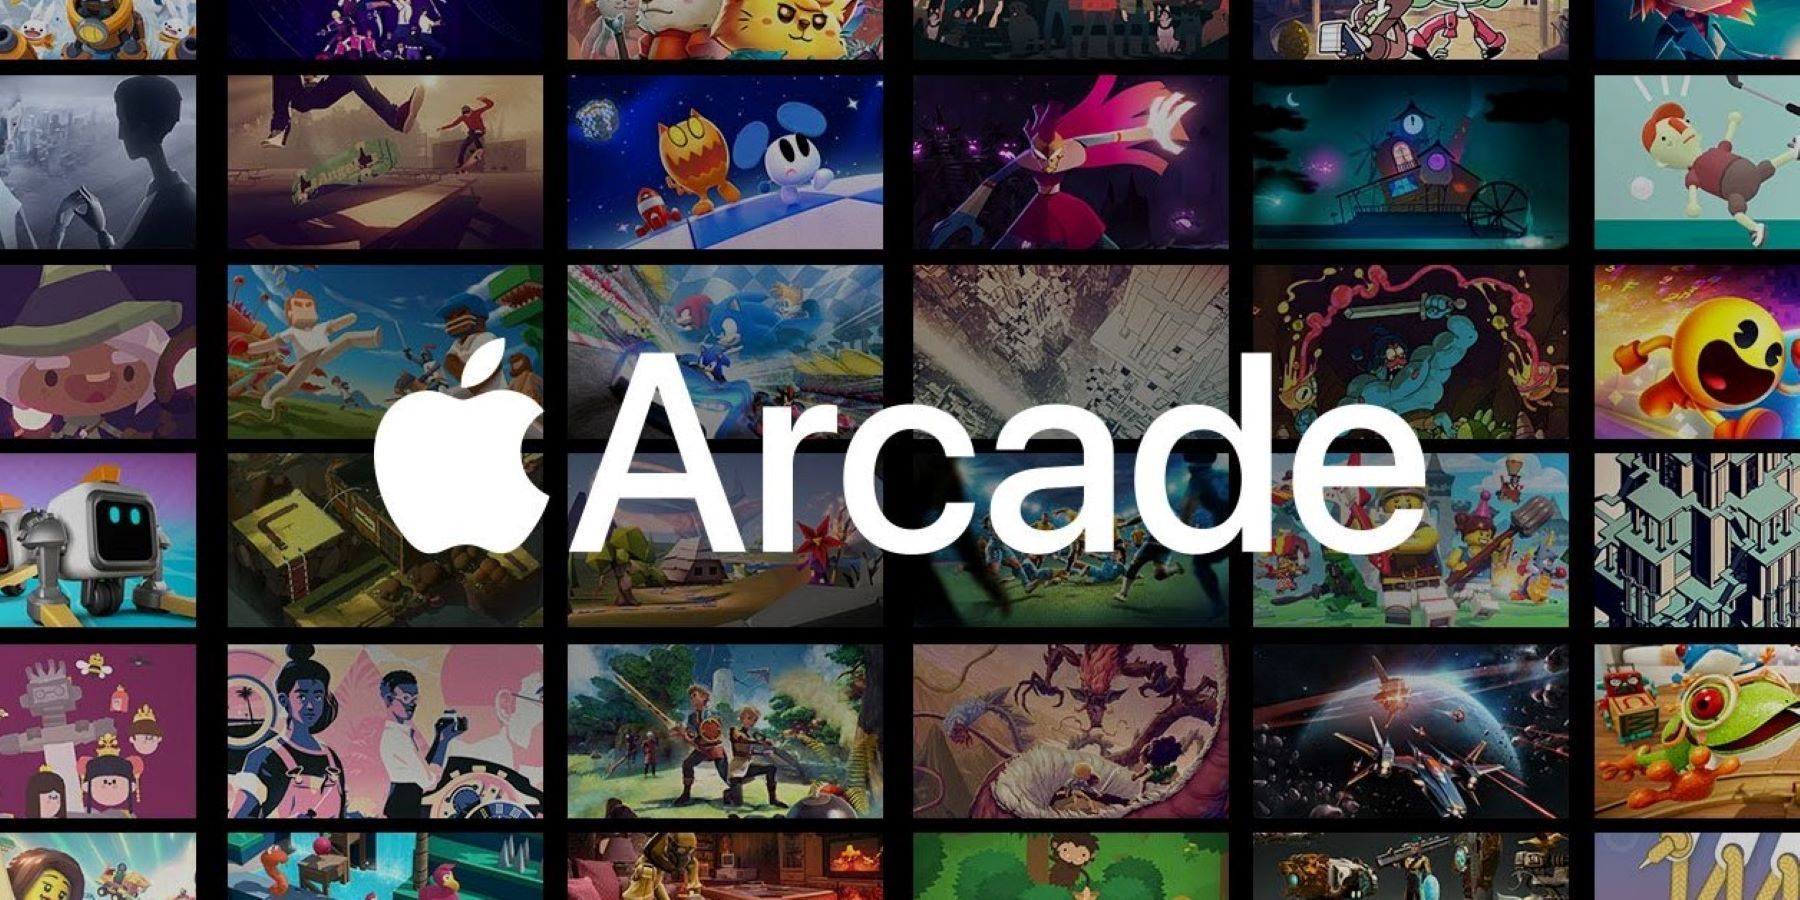 Official Apple Arcade promo art